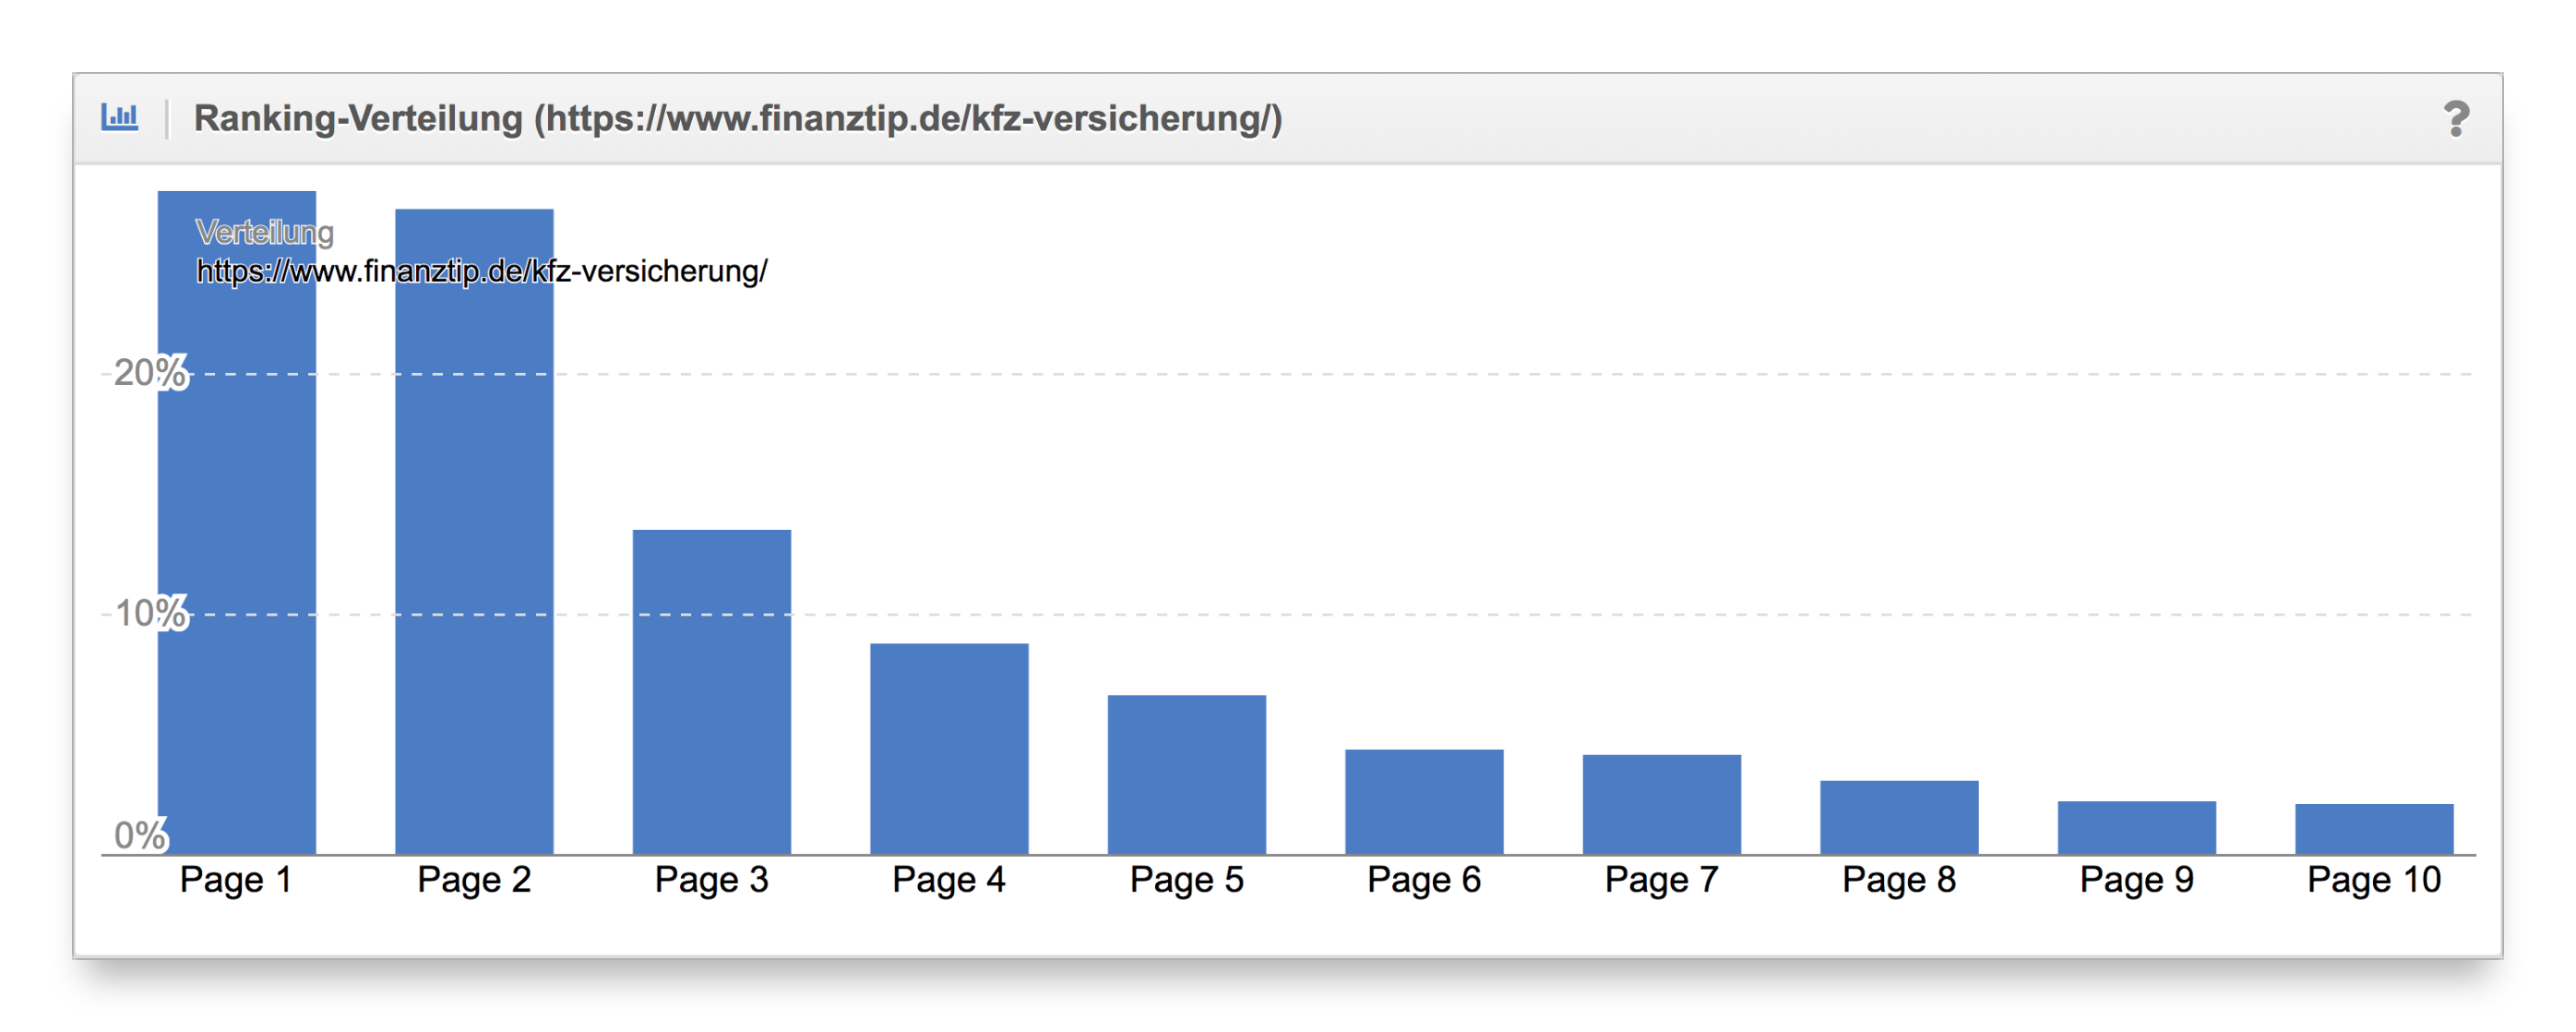 Vergleich Ranking-Verteilung Content-Formate finanztip.de